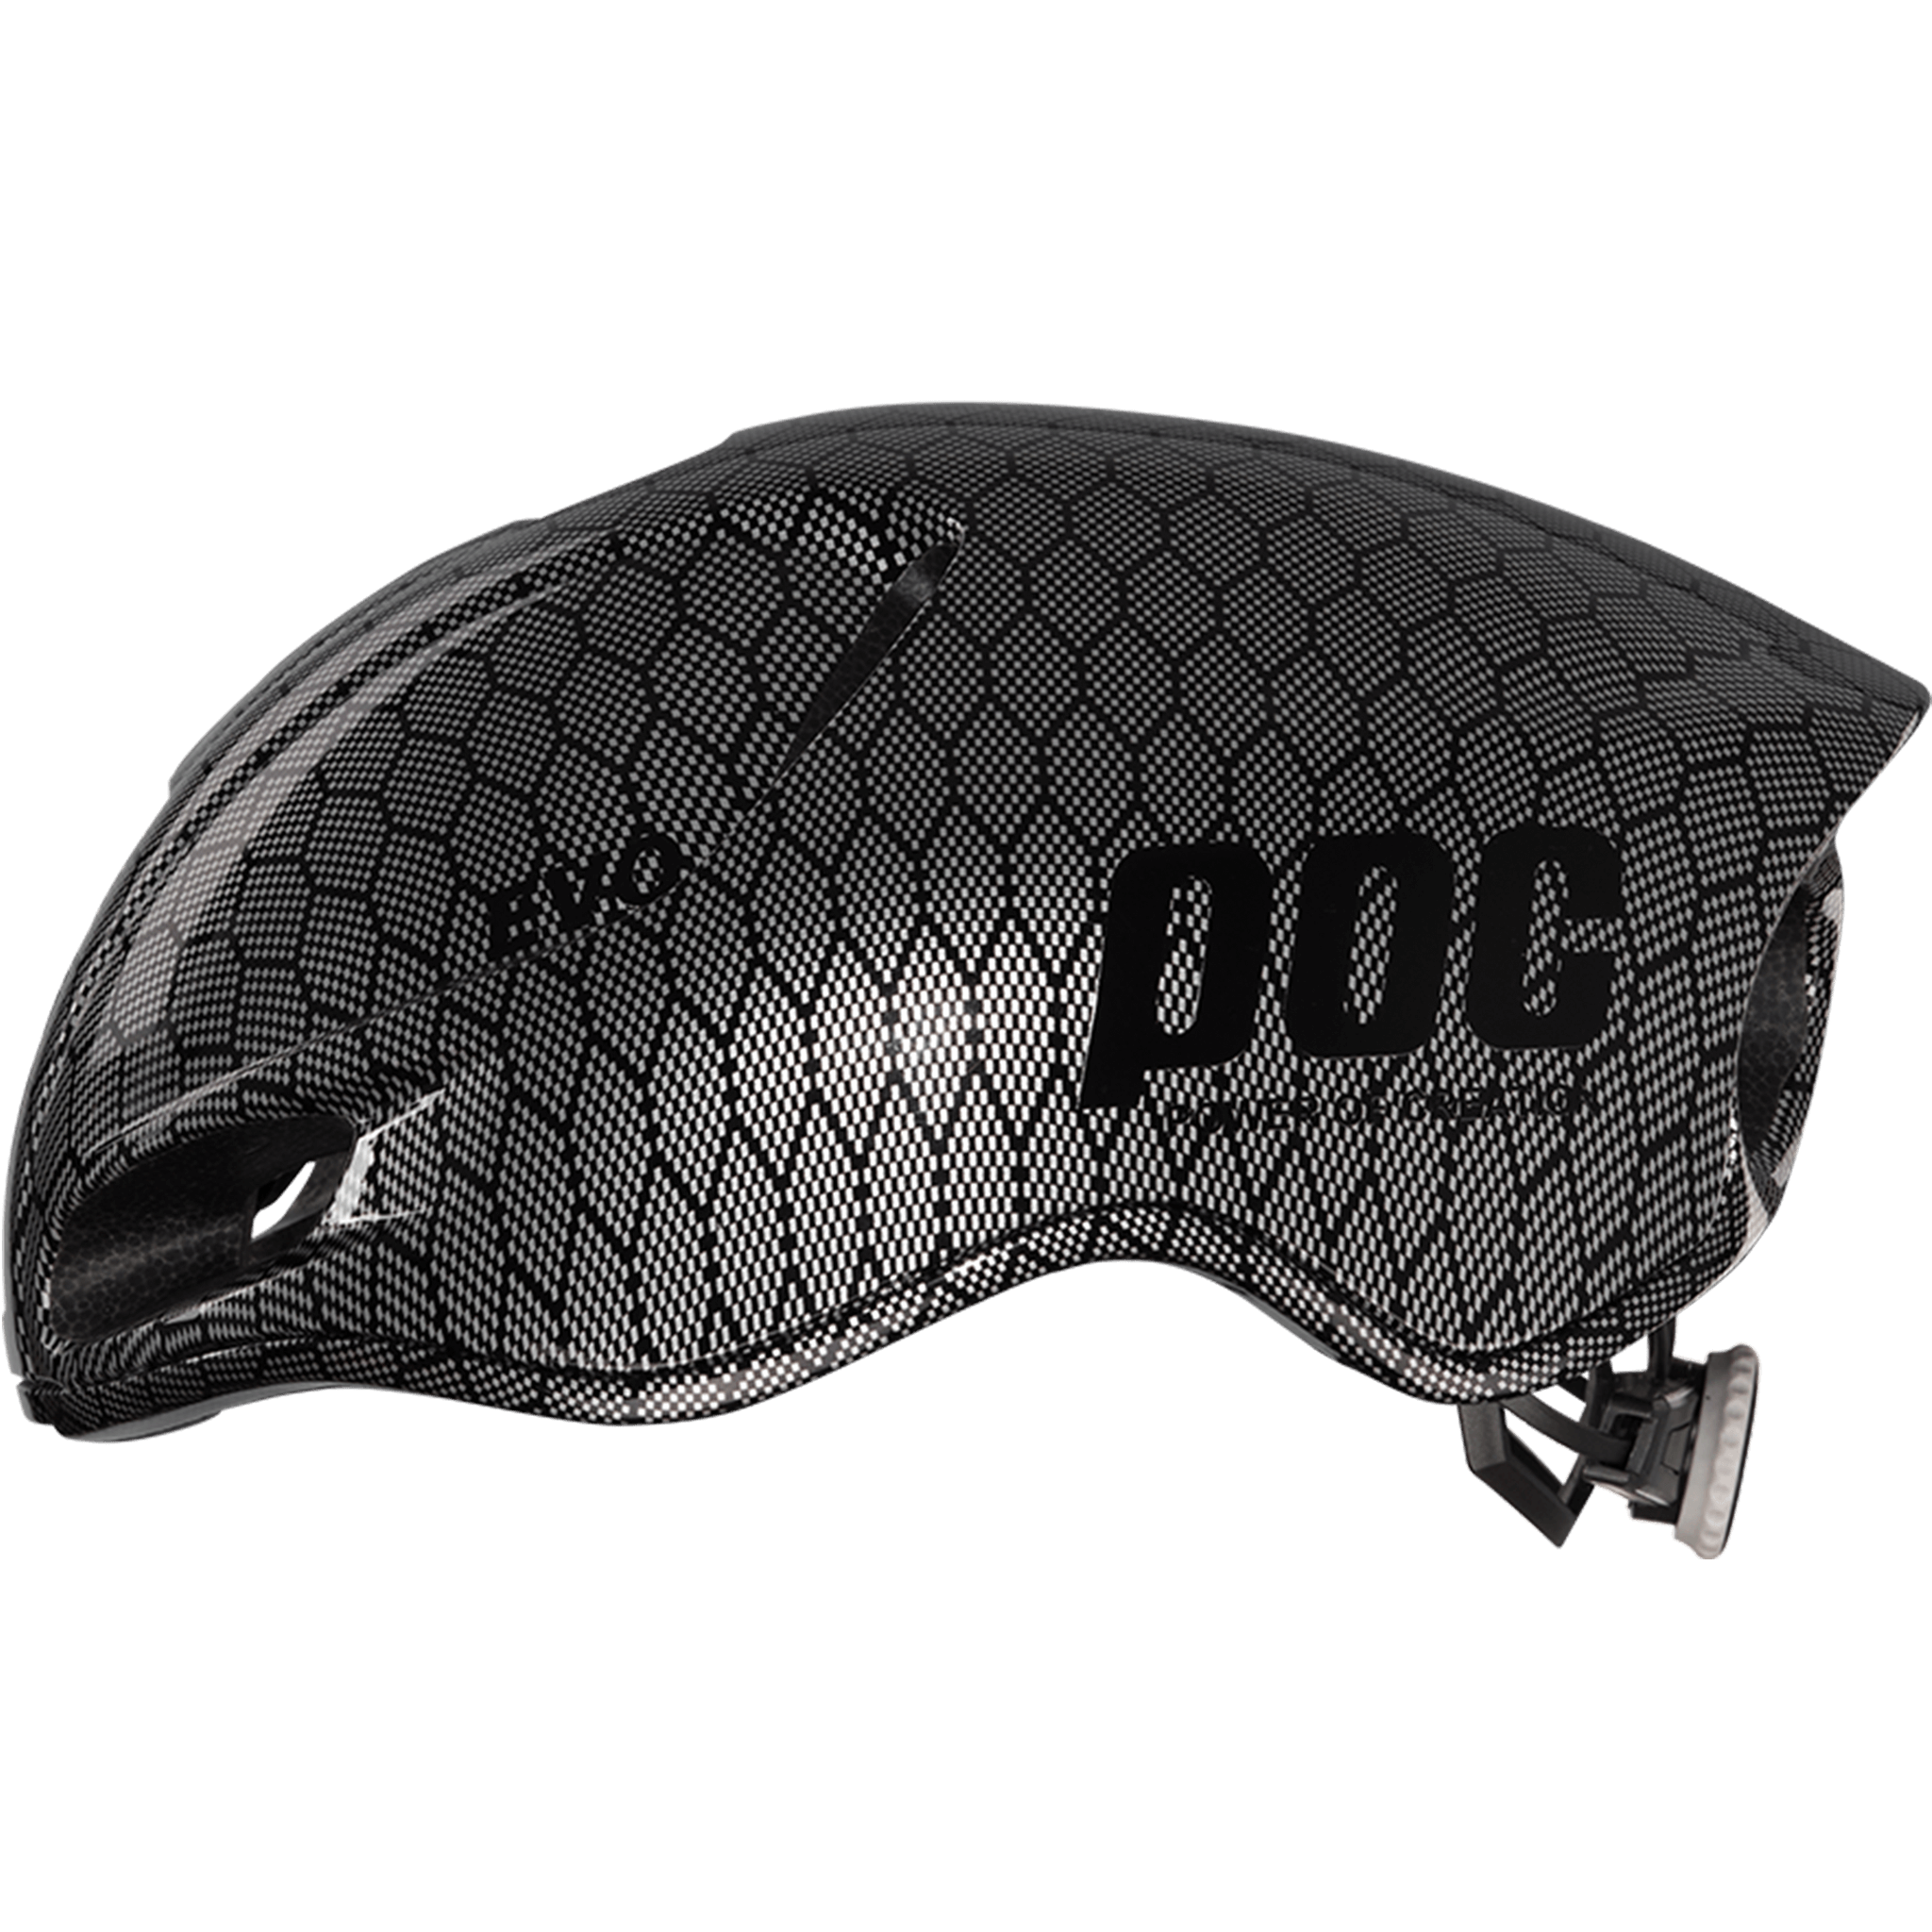 Hình nón POC Evo màu sắc đen carbon 2